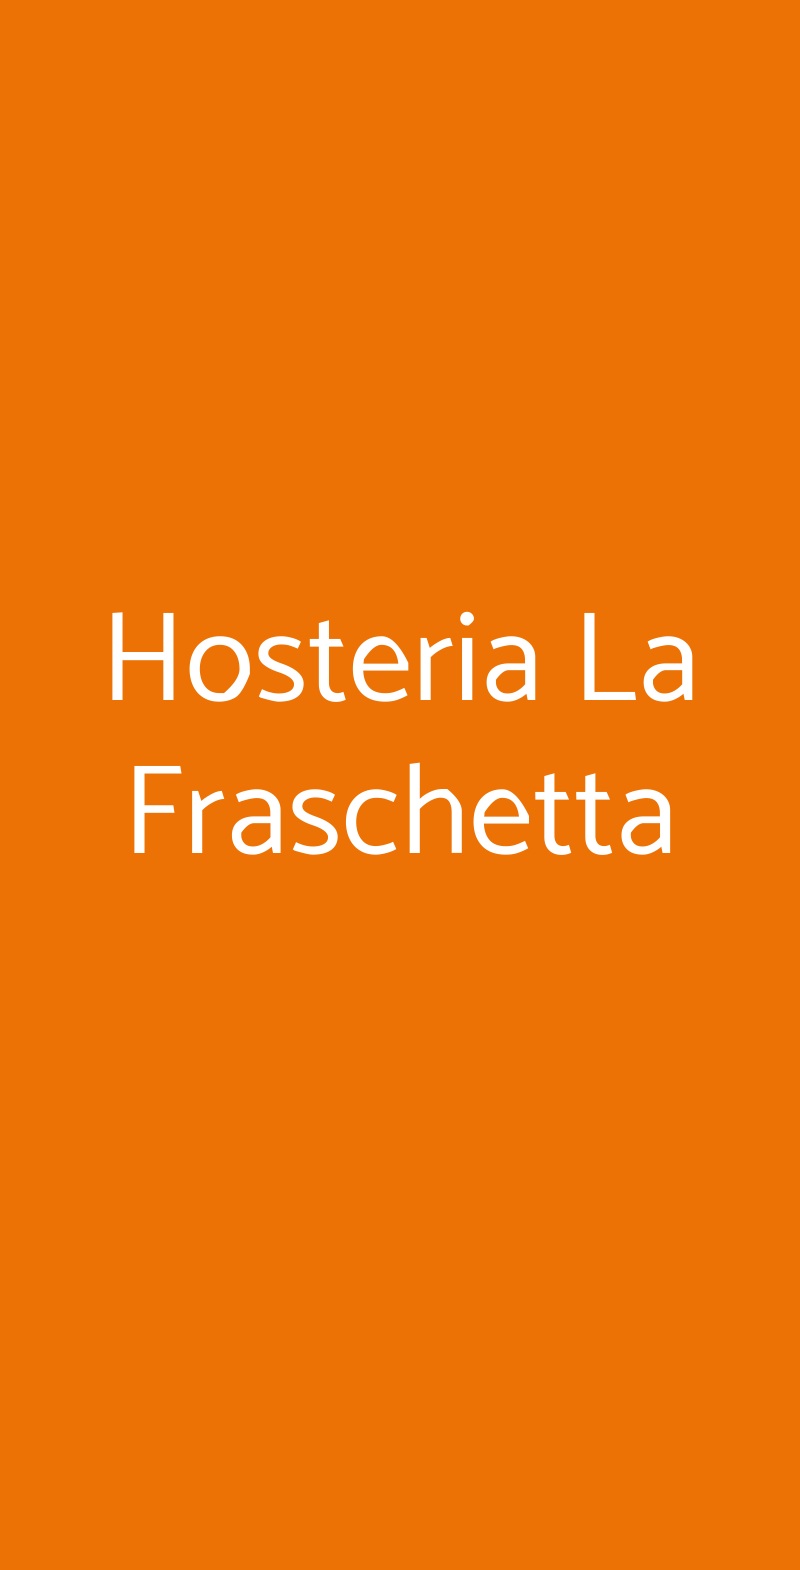 Hosteria La Fraschetta Castel Gandolfo menù 1 pagina